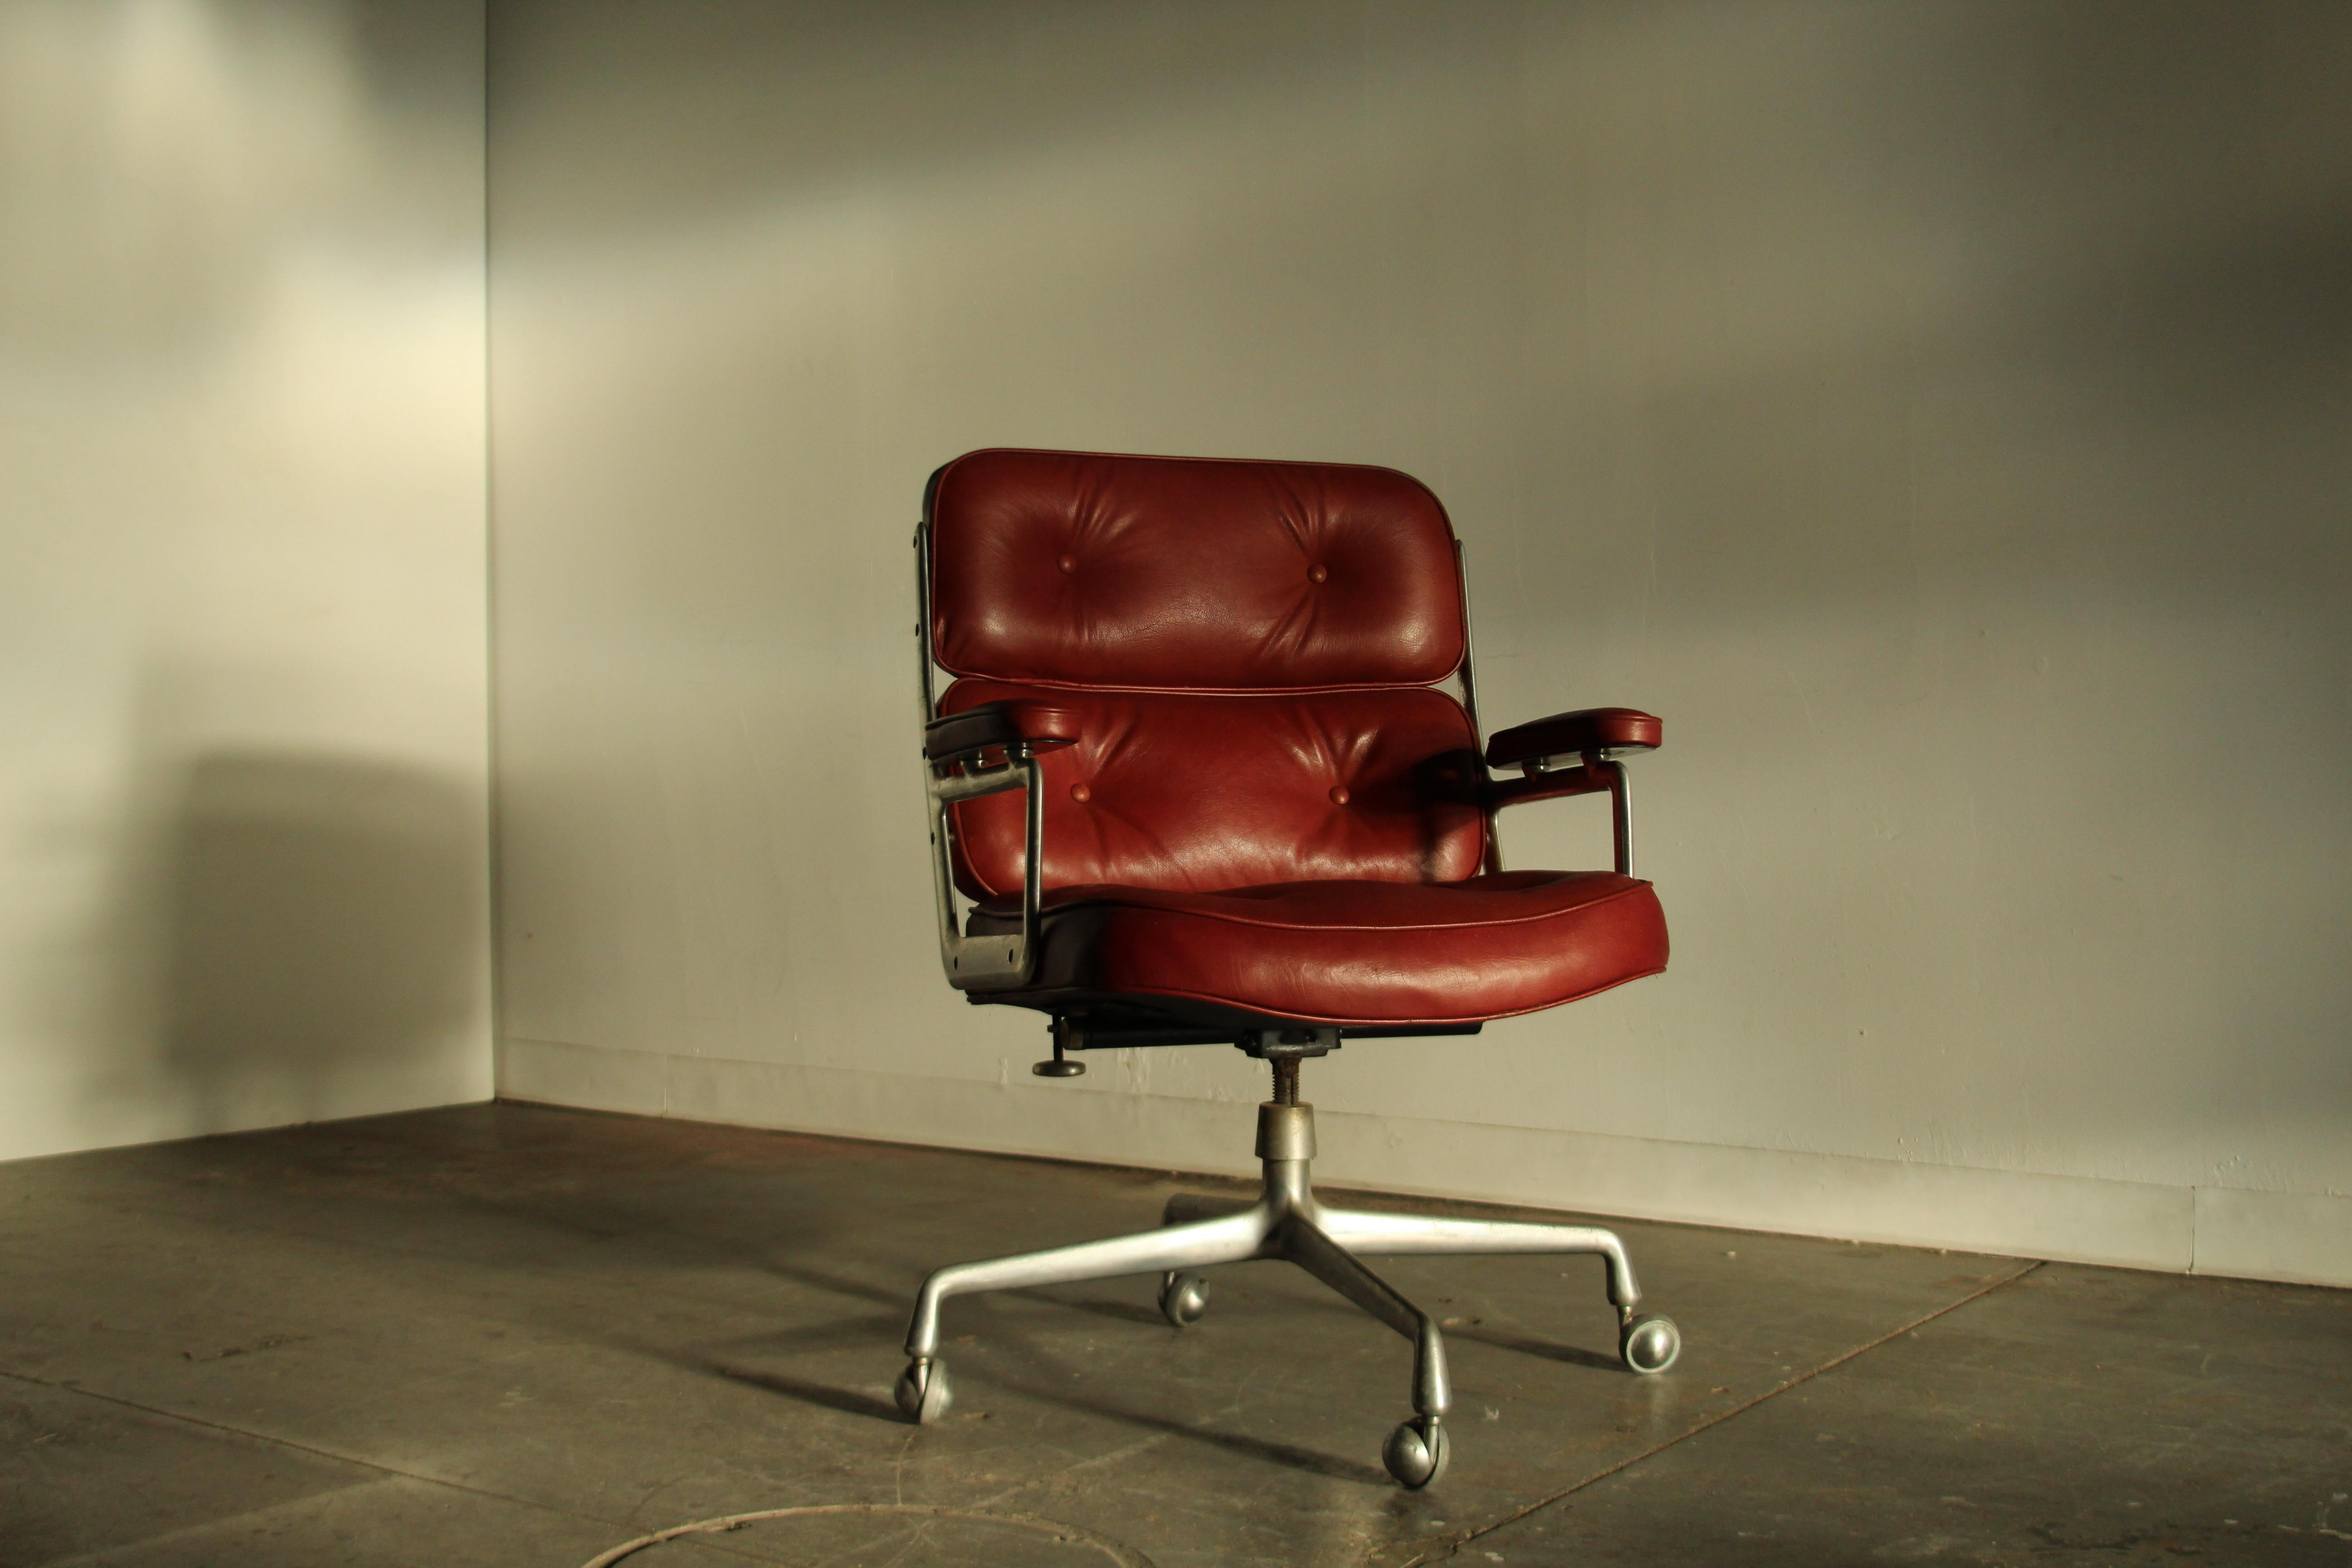 Ein fantastisches Exemplar des Eames Time Life Executive Chair aus den 1970er Jahren, ganz einfach der ultimative Schreibtischstuhl. Höchster Komfort mit erstaunlichem Rückenkippmechanismus. Gebaut für die Ewigkeit. Dieser Stuhl wurde mit einem